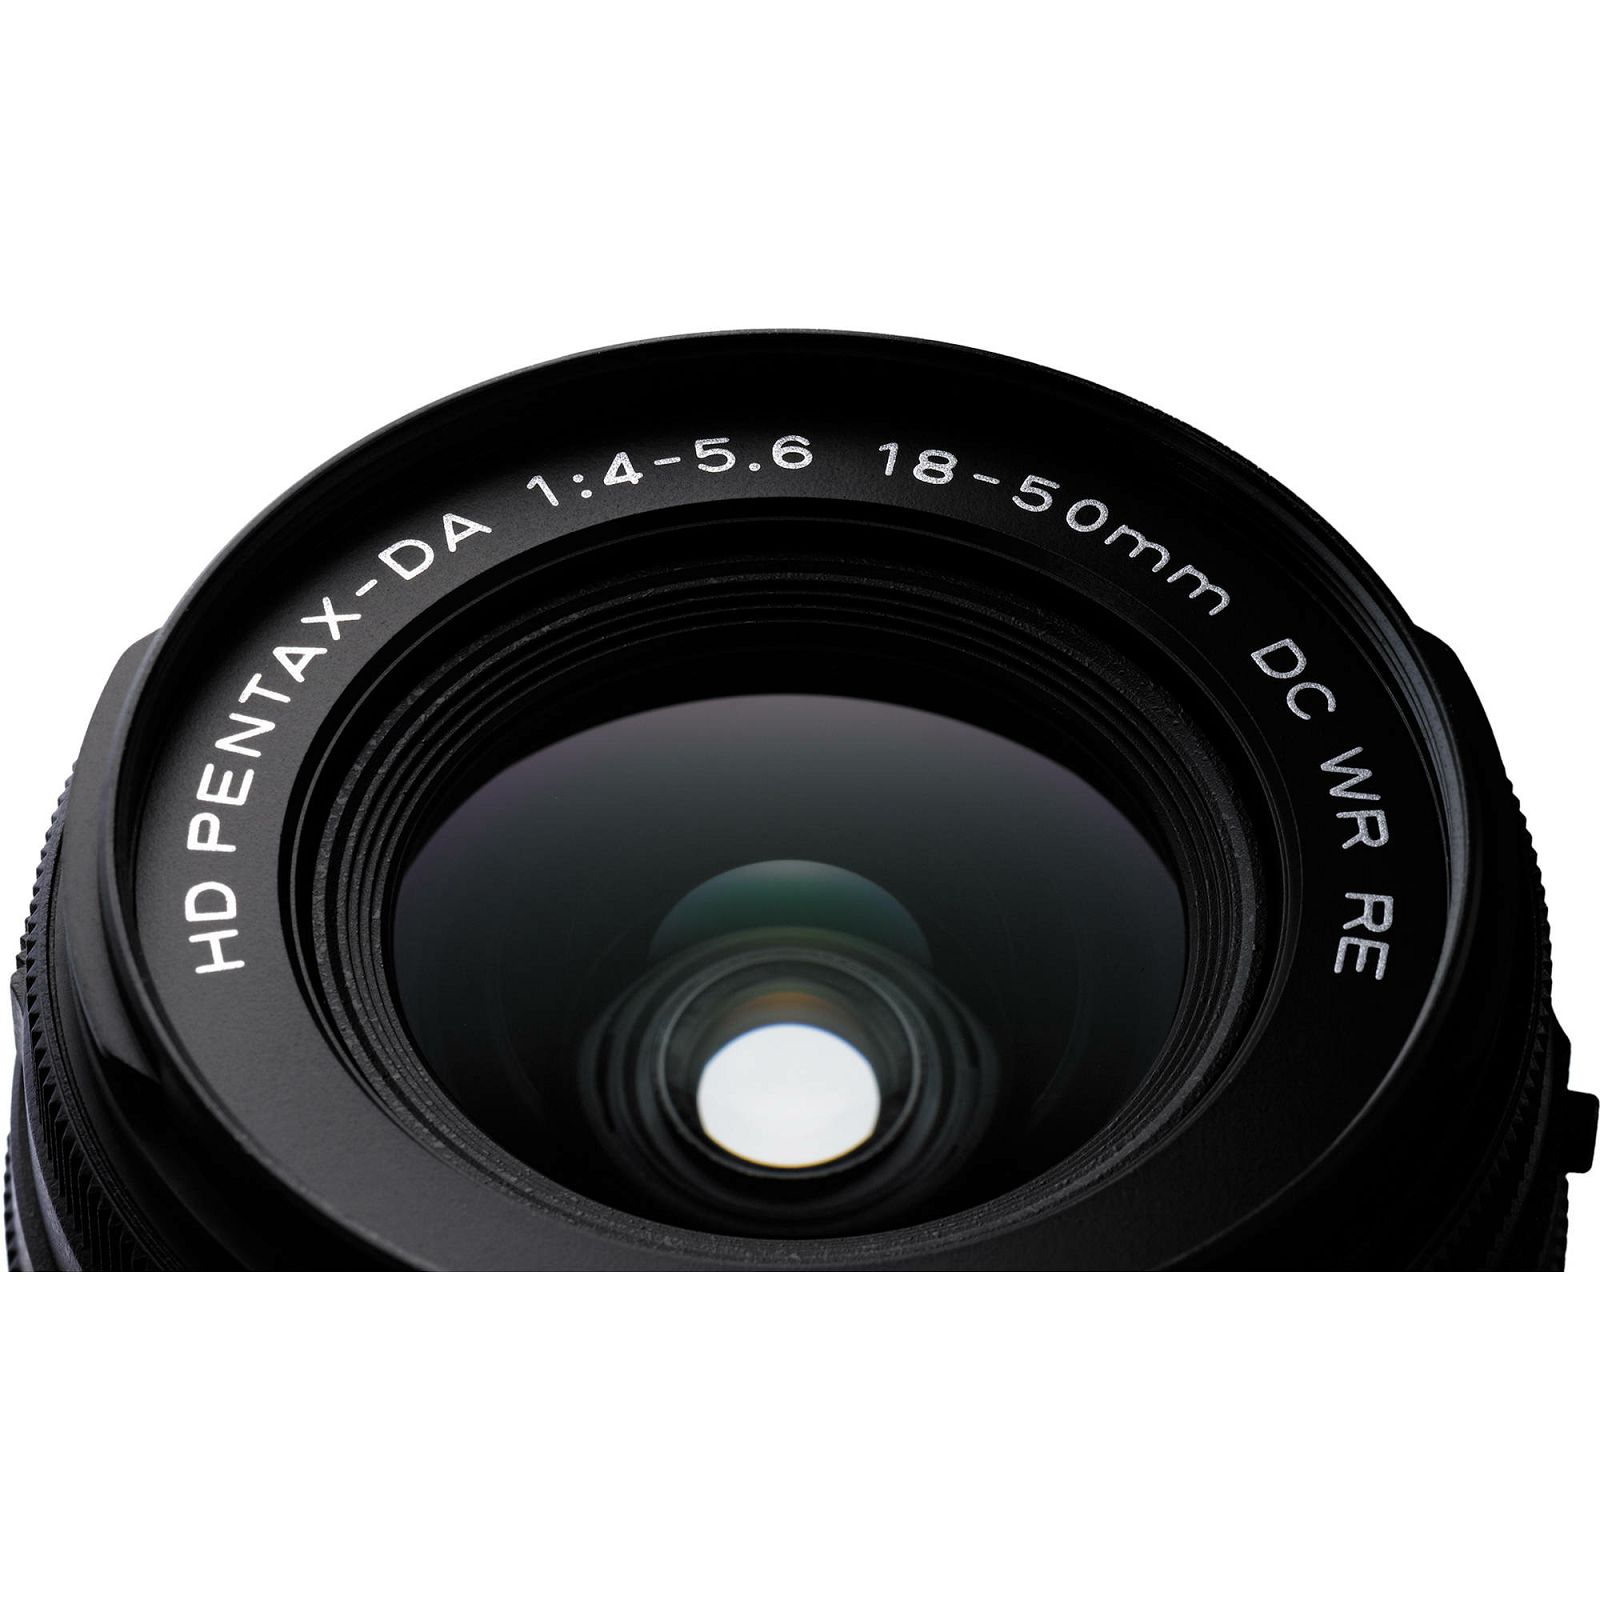 Pentax KP + 18-50mm f/4-5.6 DC WR RE Black KIT DSLR Crni Digitalni fotoaparat HD DA 18-50 f/4.0-5.6 f4-5.6 4-5.6 (1601700)